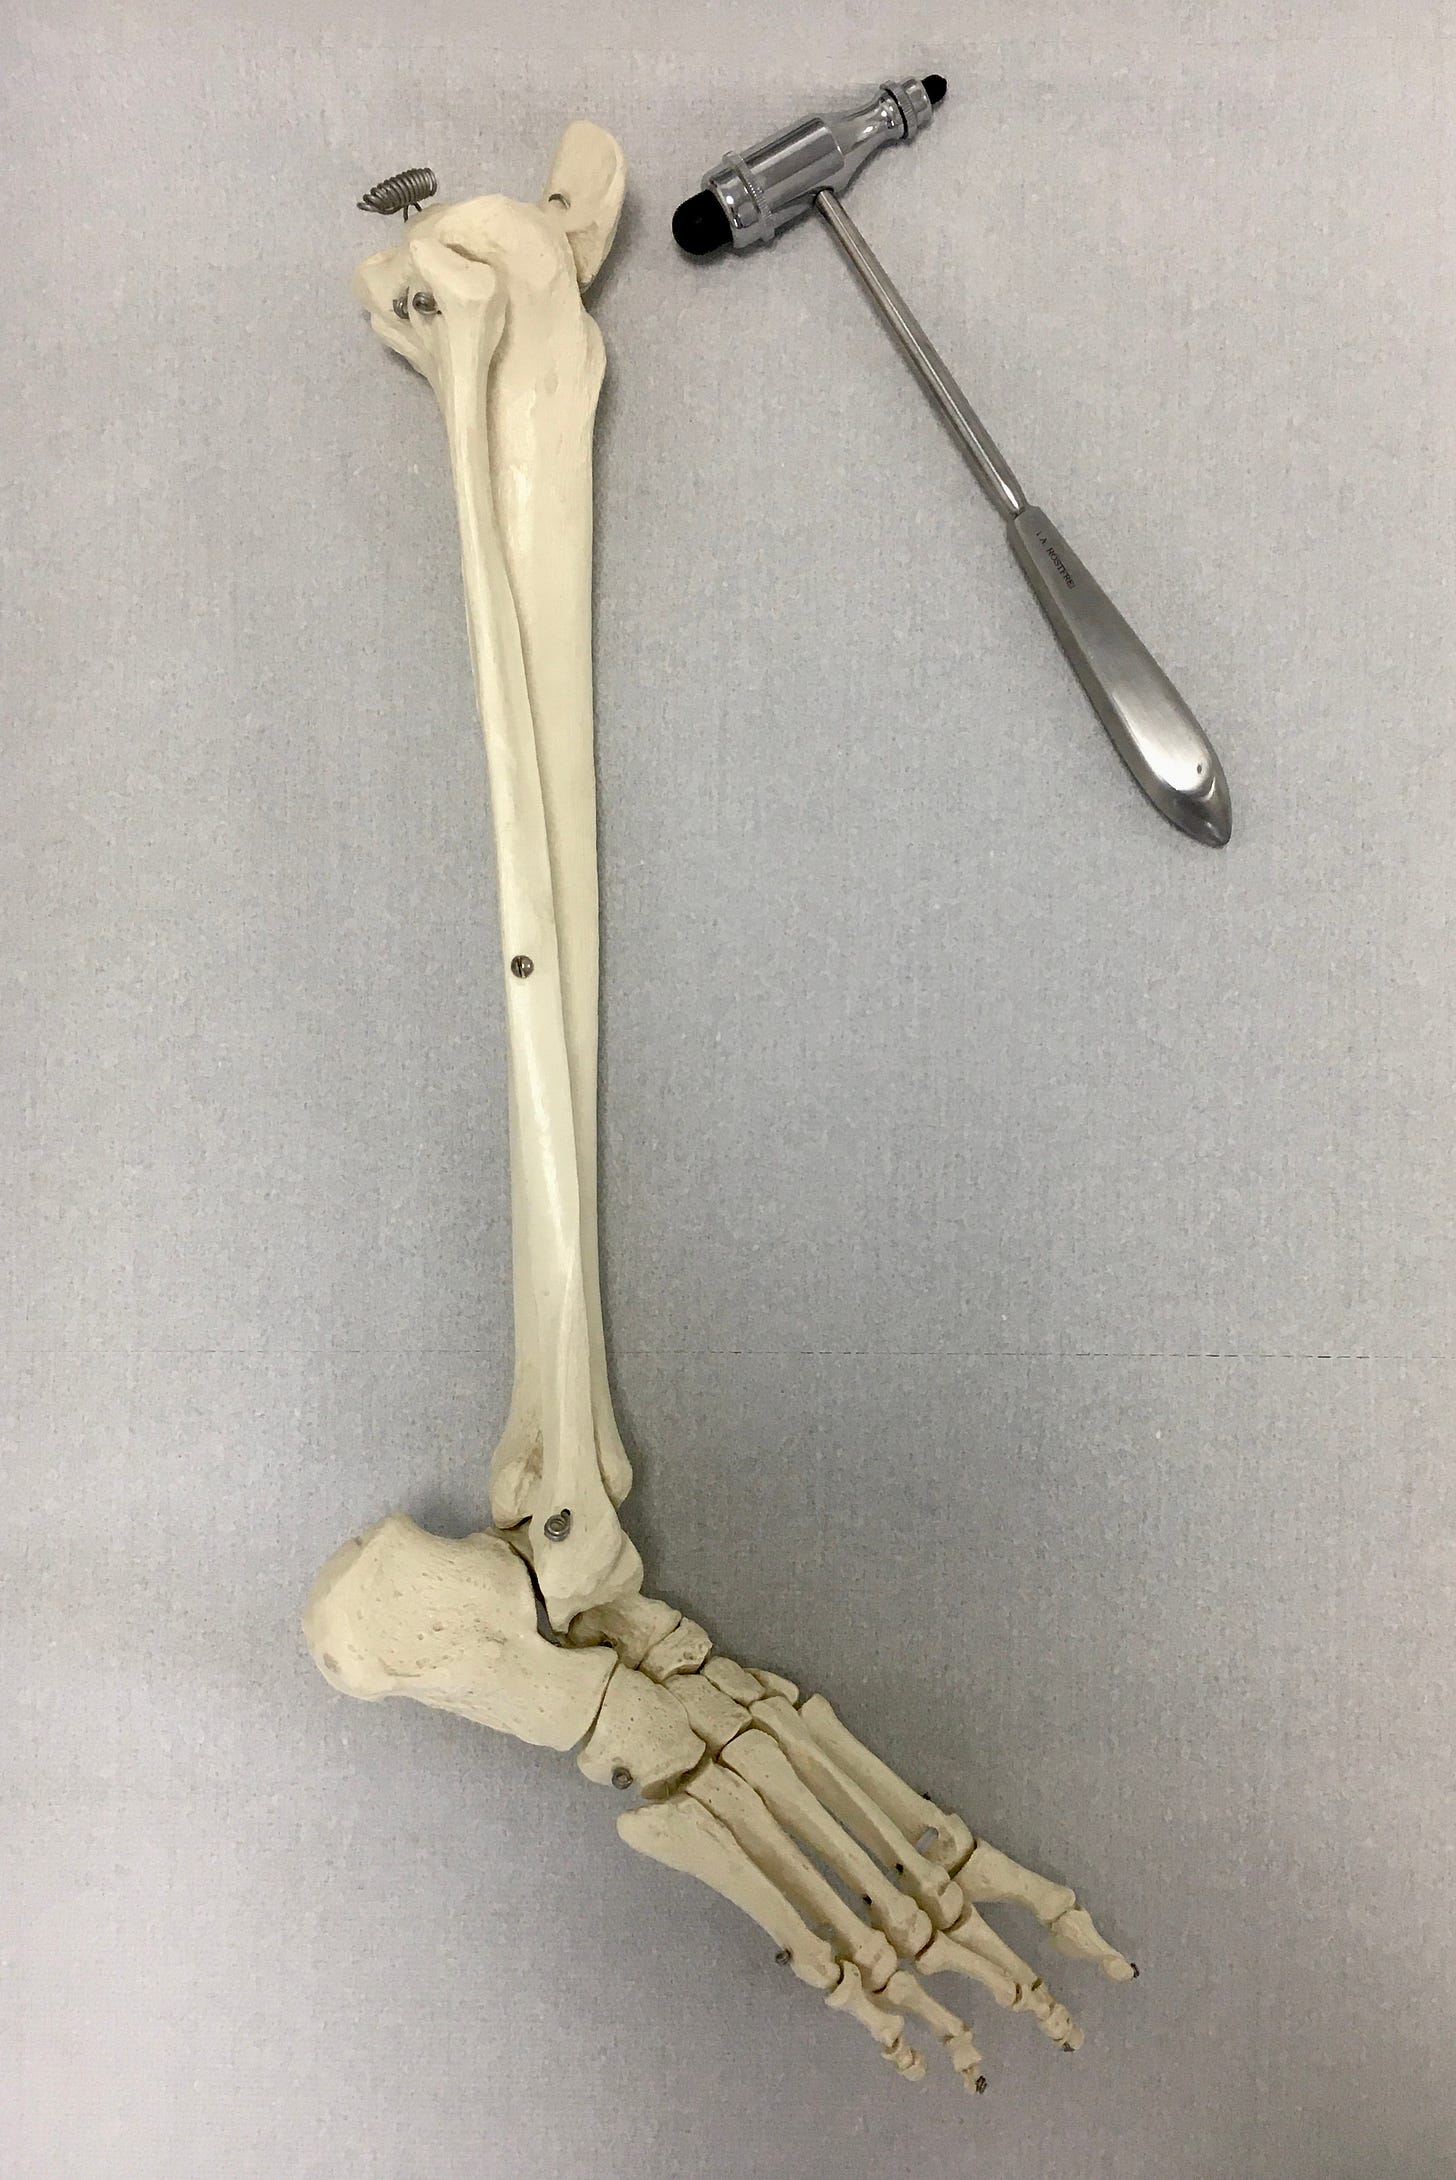 Skelettteil (Unterschenkel + Fuß) und ein silberner Reflexhammer vor weißlichem Hintergrund.